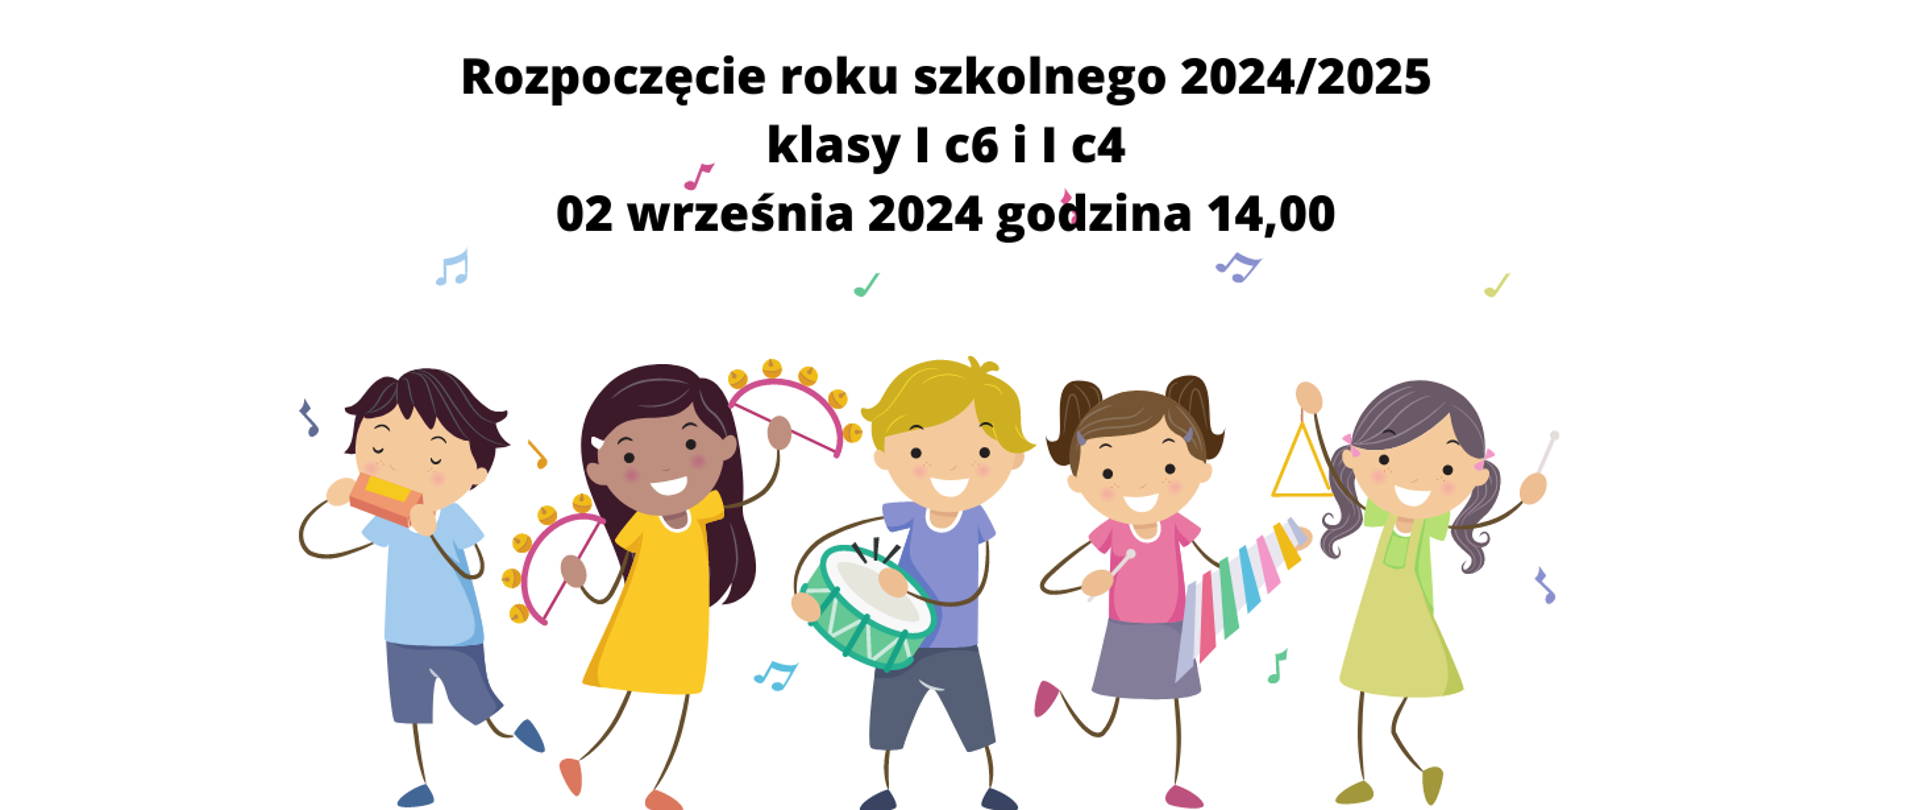 rozpoczęcie roku szkolnego 2024/2025 dla klas I c6 i c4 2 września 2024 godzina 14,00